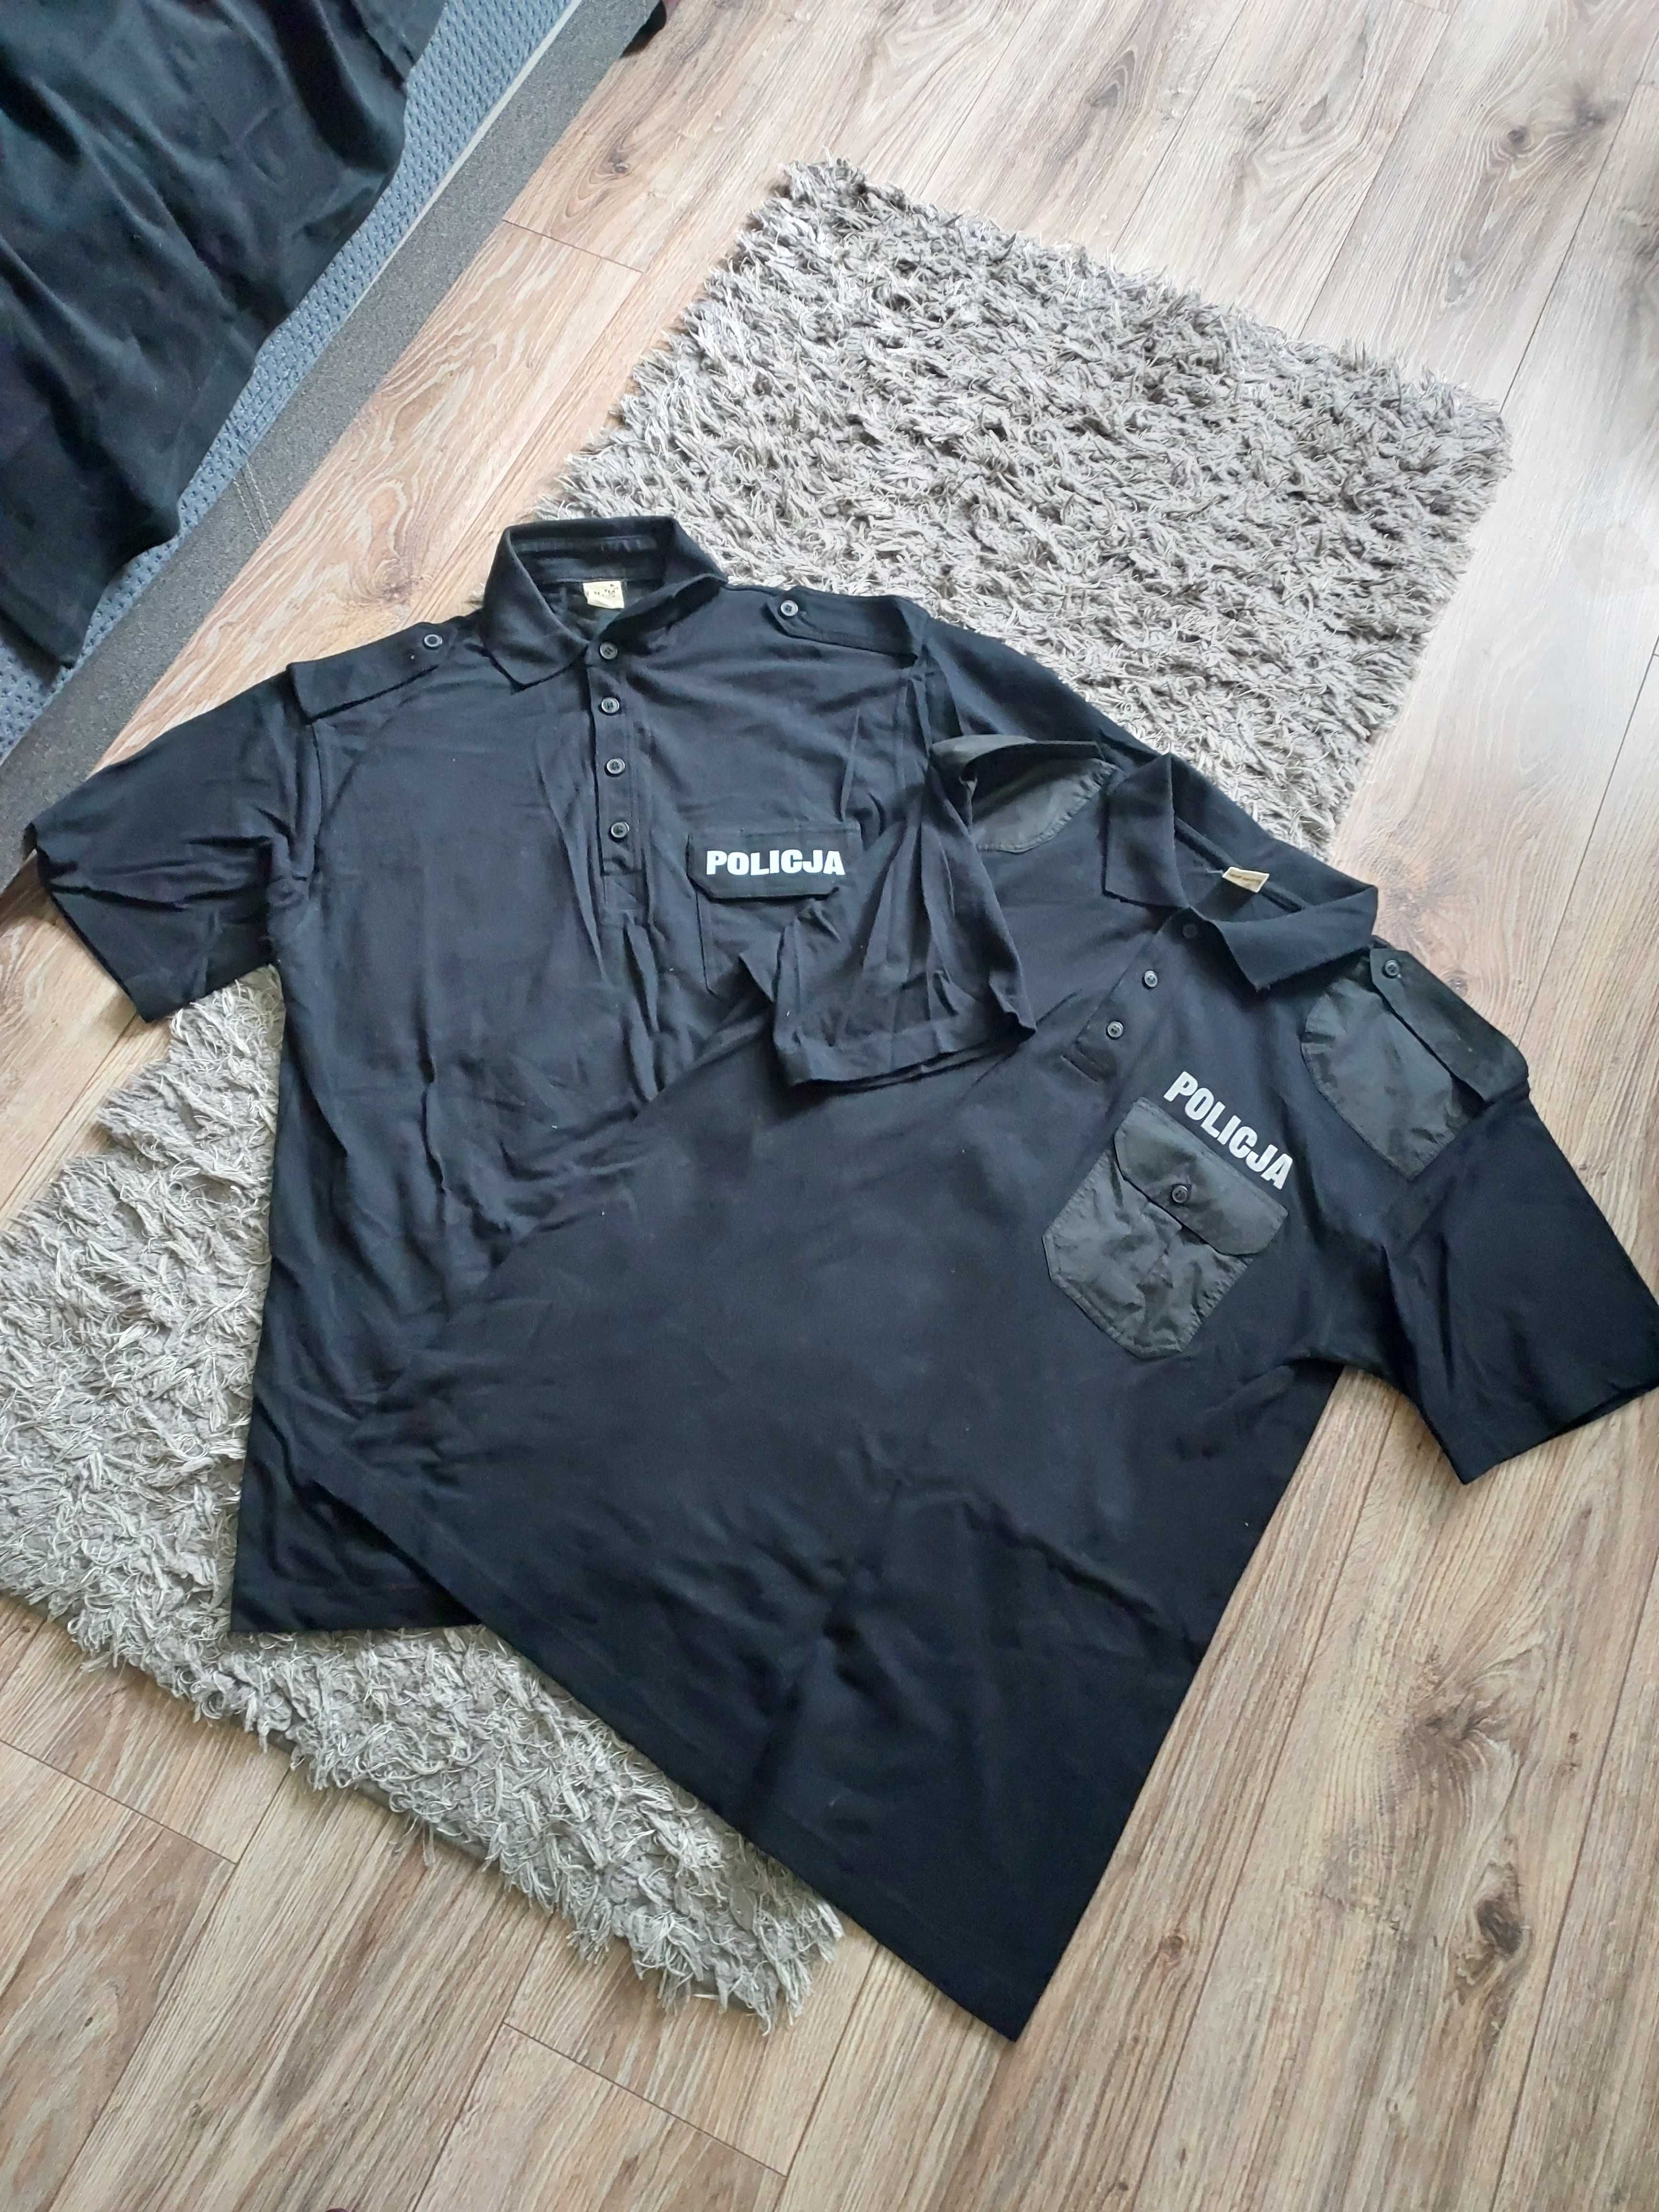 Koszulki polo czarne Policja rozm. XL 2 szt